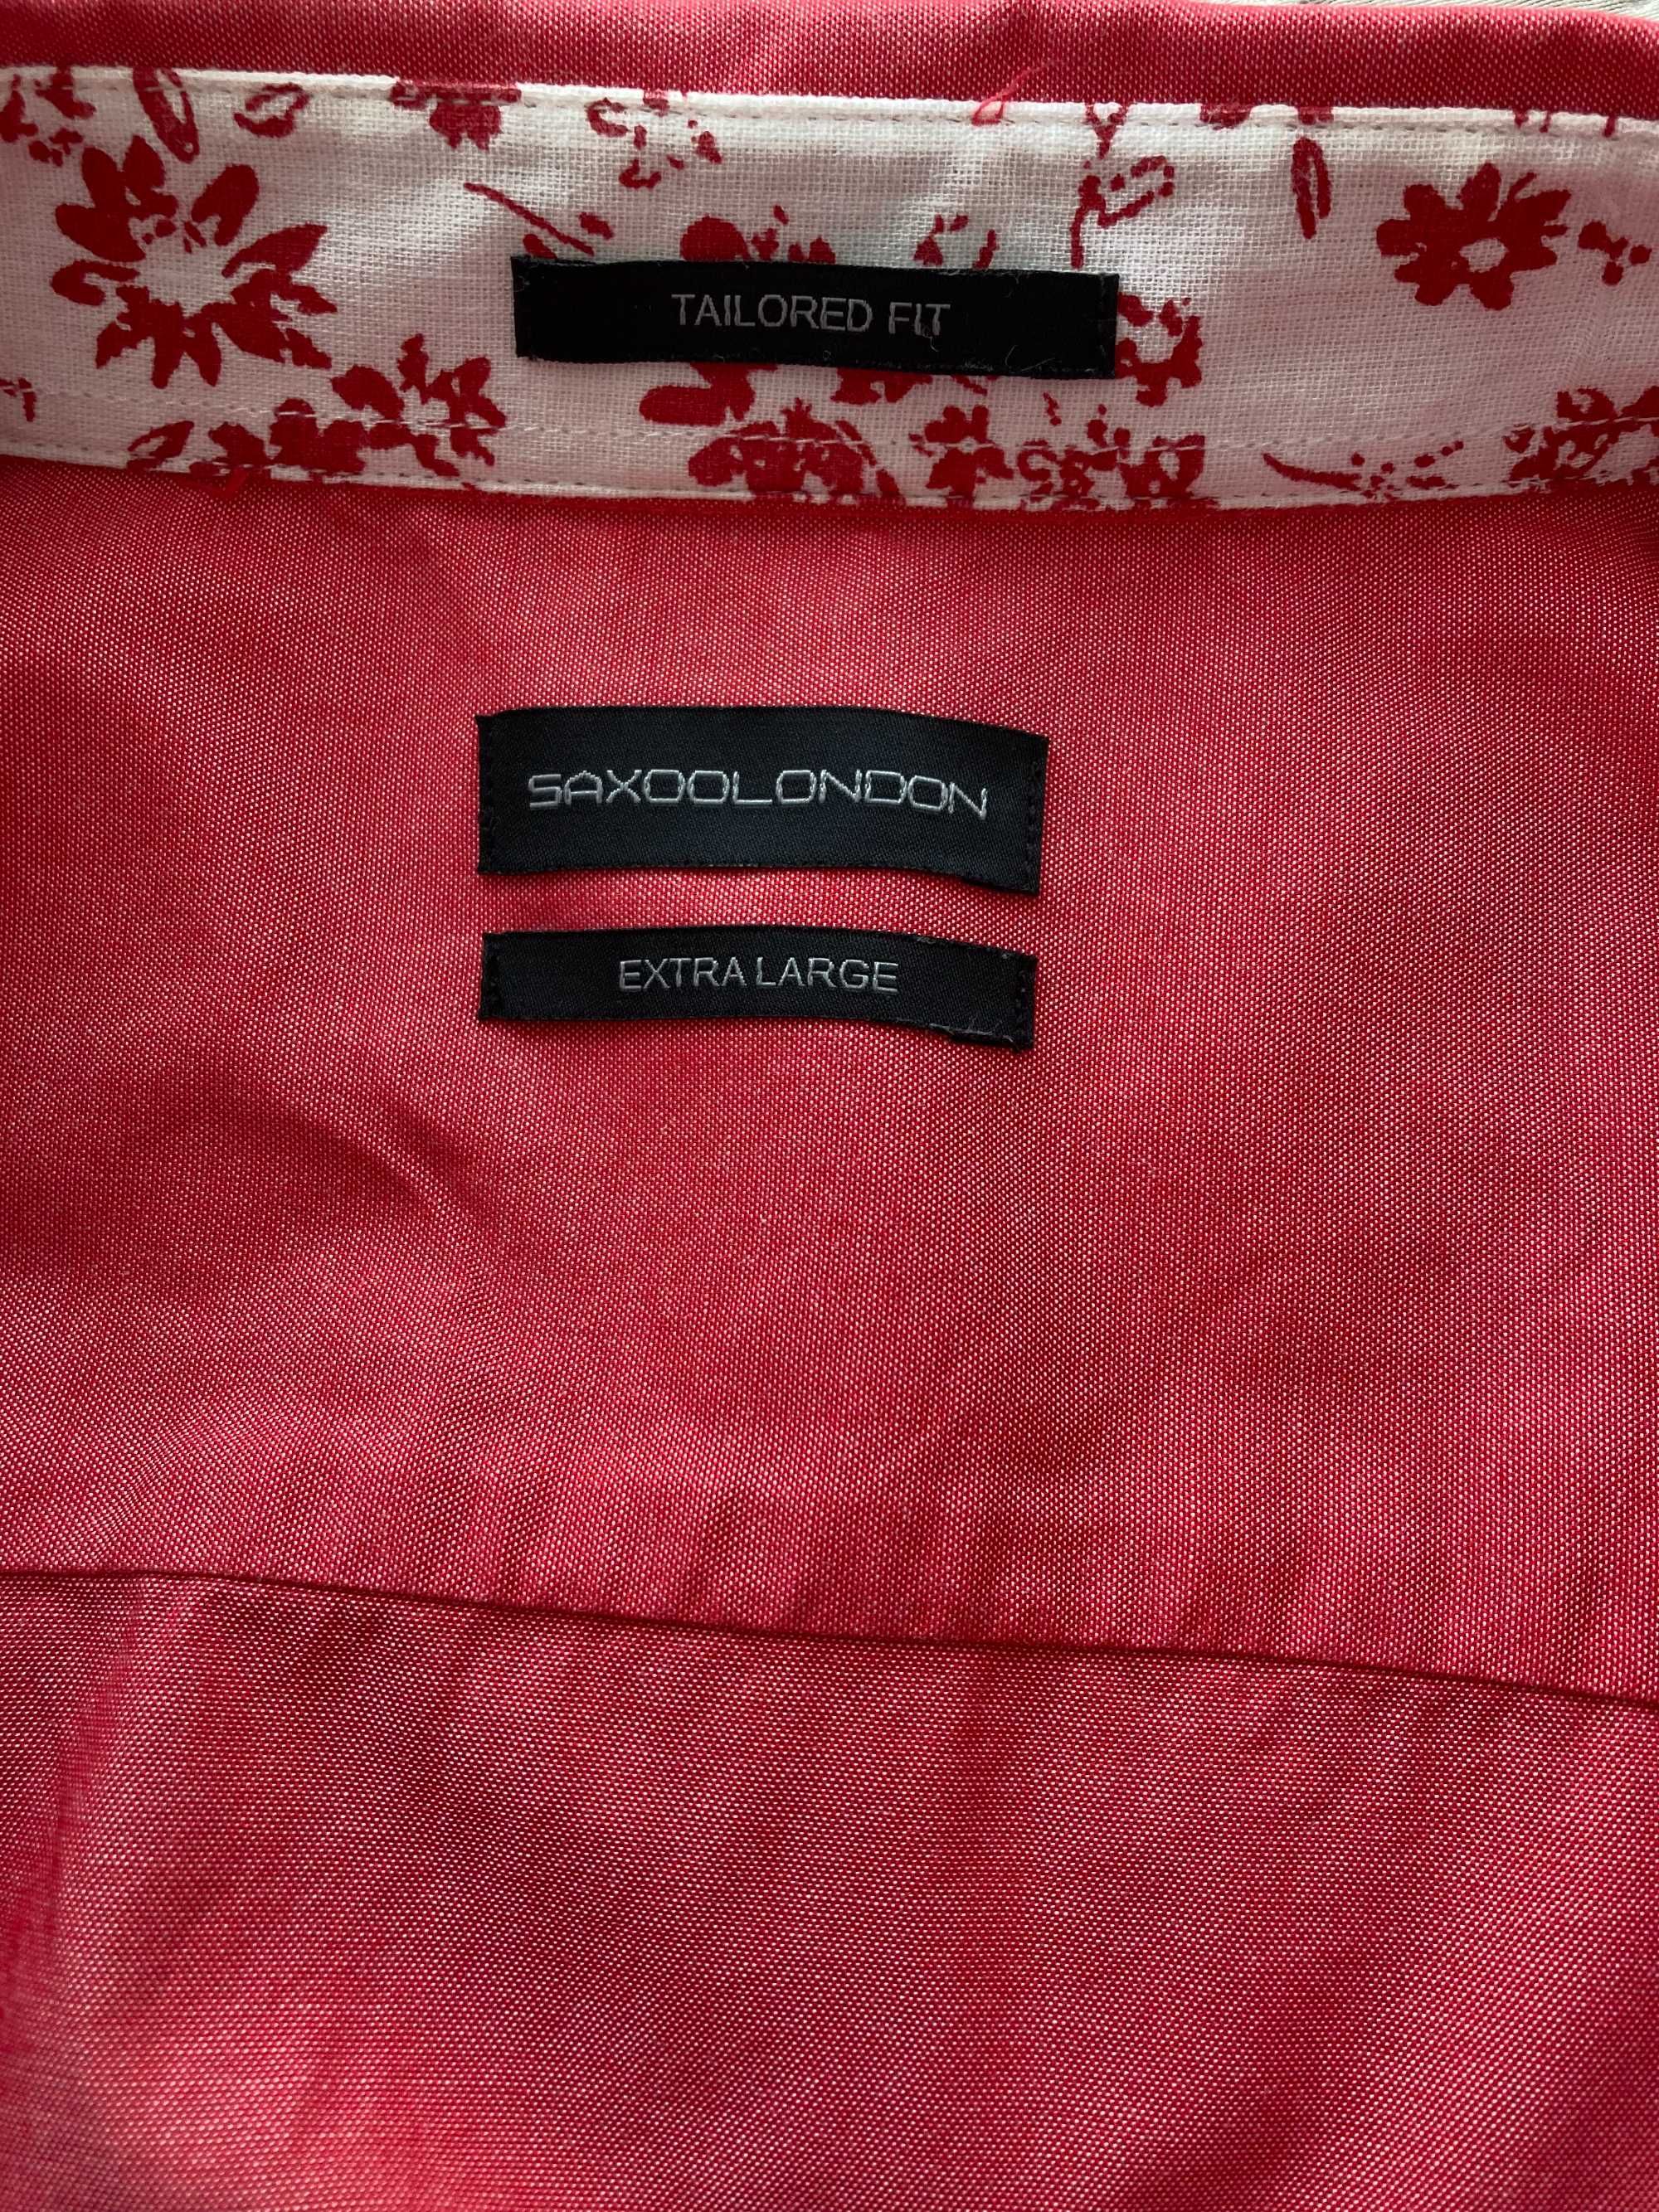 Koszula męska w kolorze łososiowym - Saxoo London - XL - Super Stan